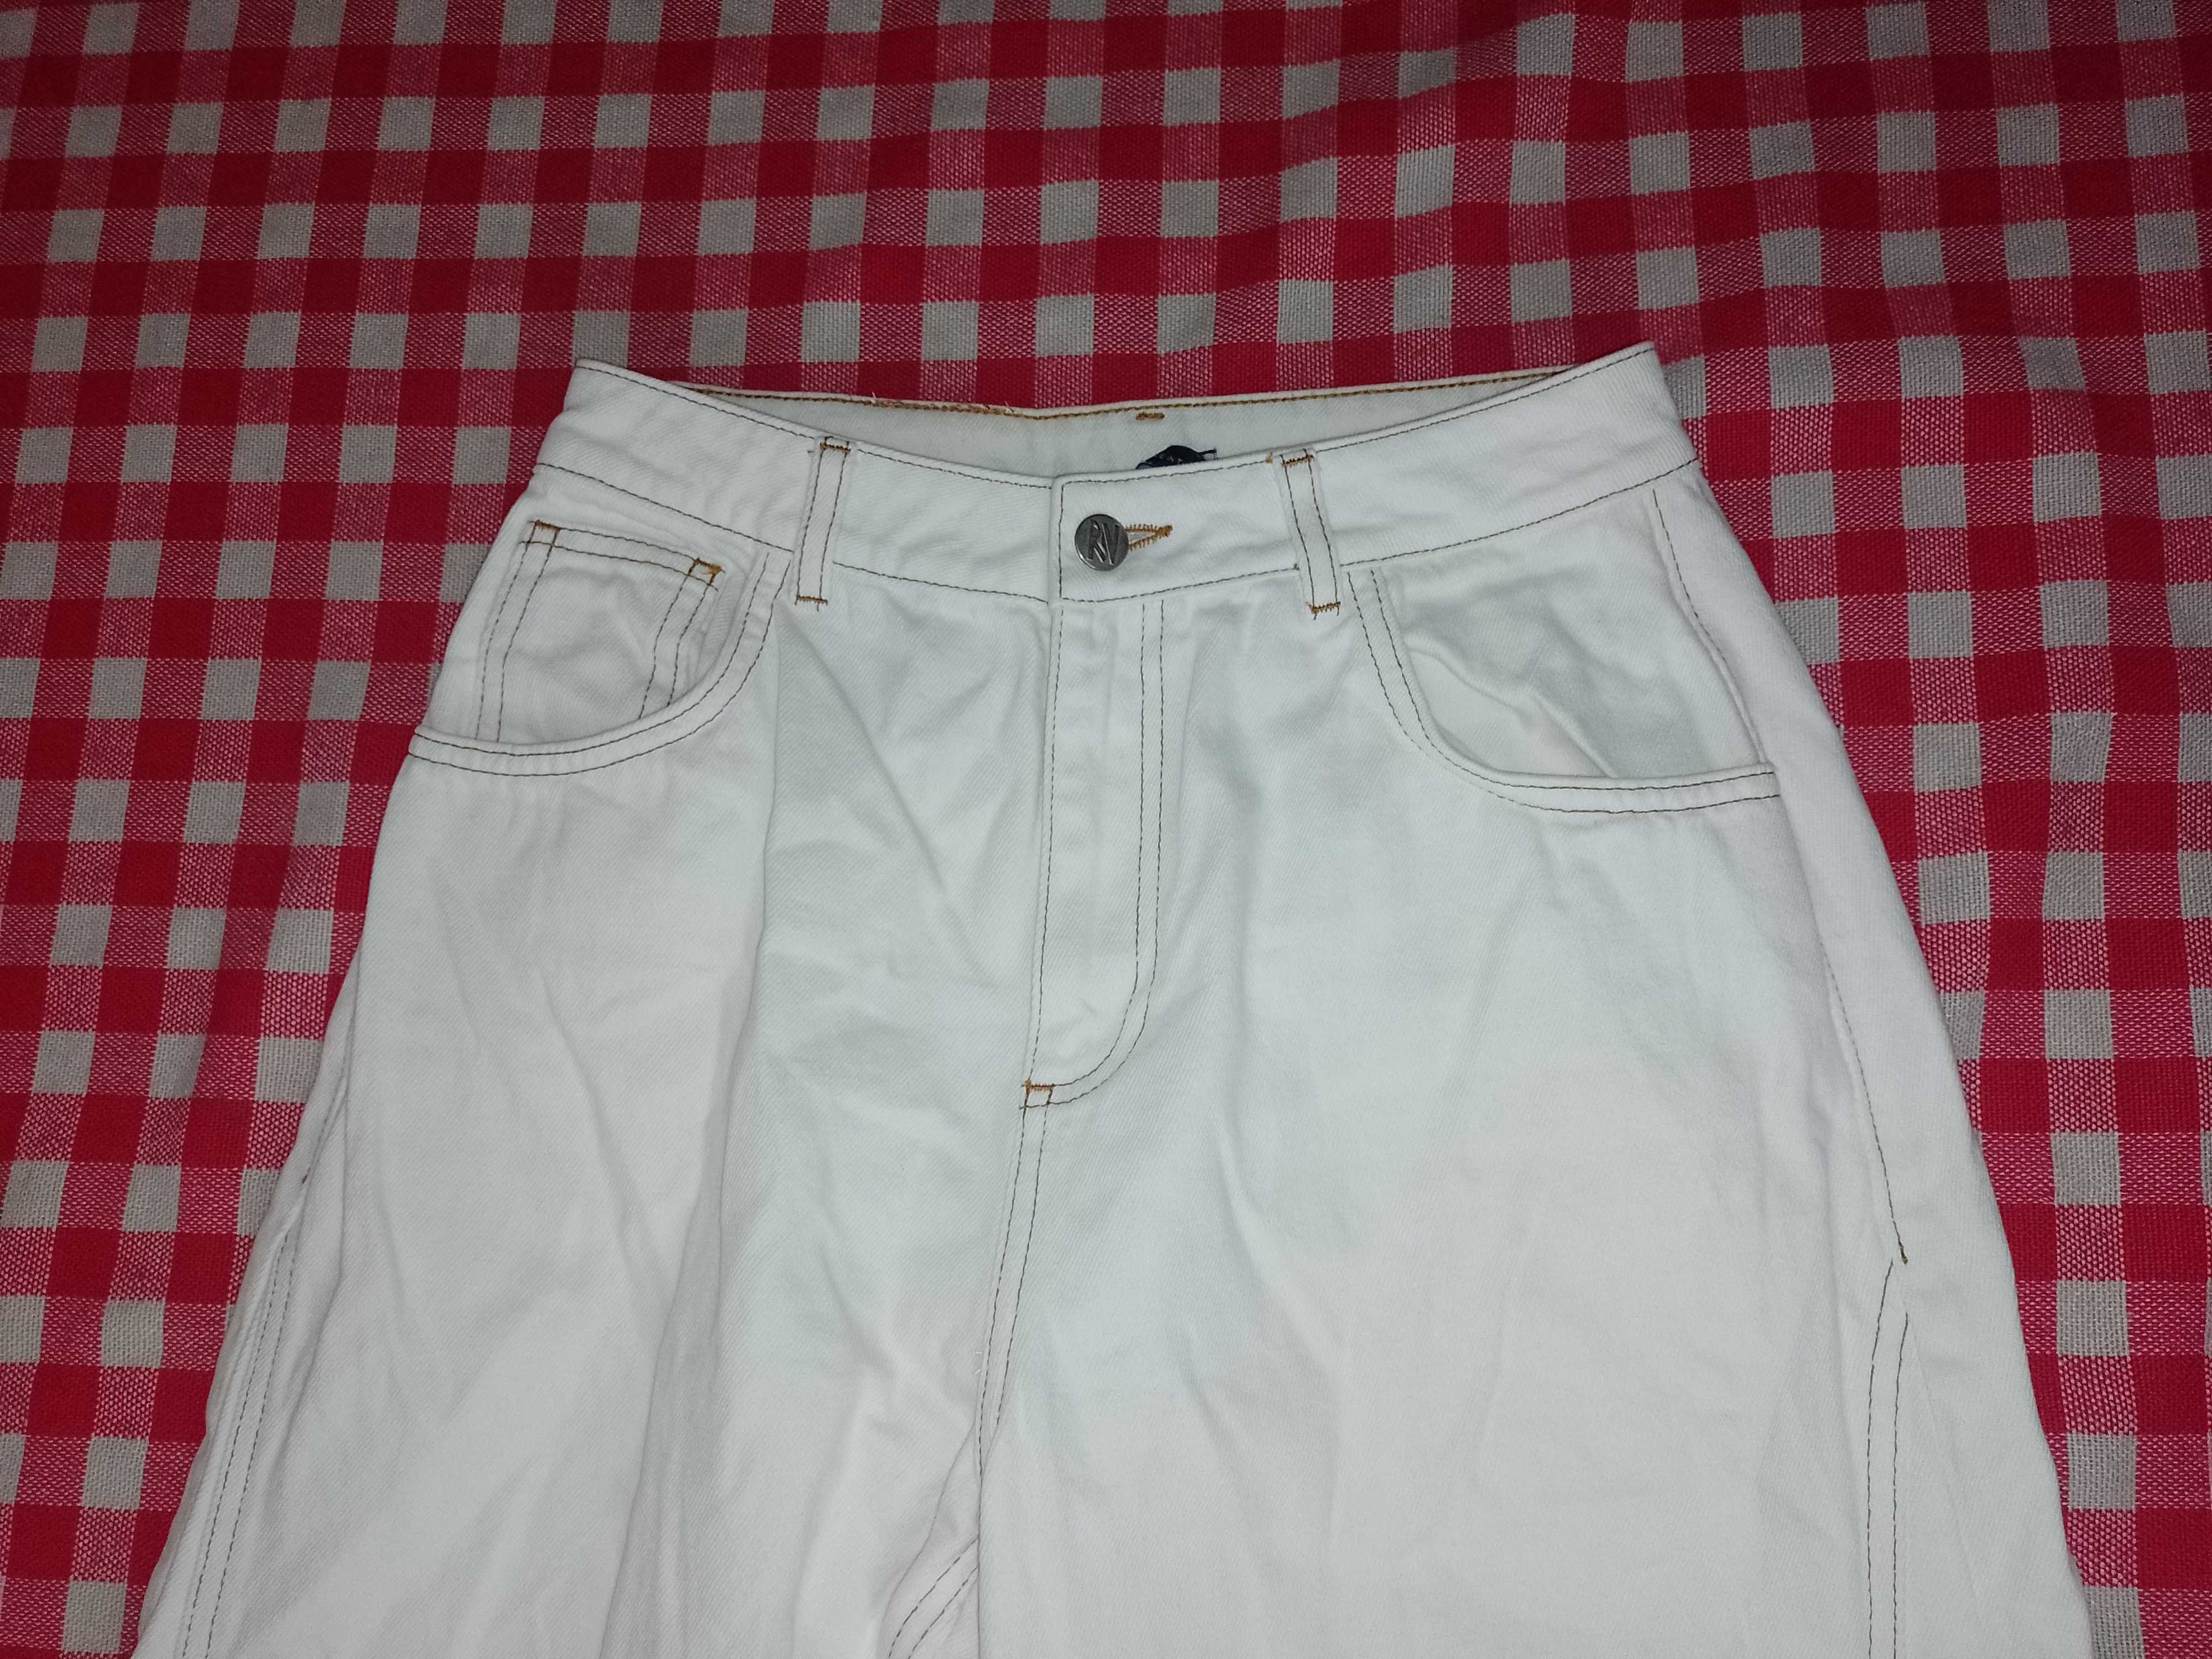 Spodnie damskie jeans Dzwony rozmiar XS